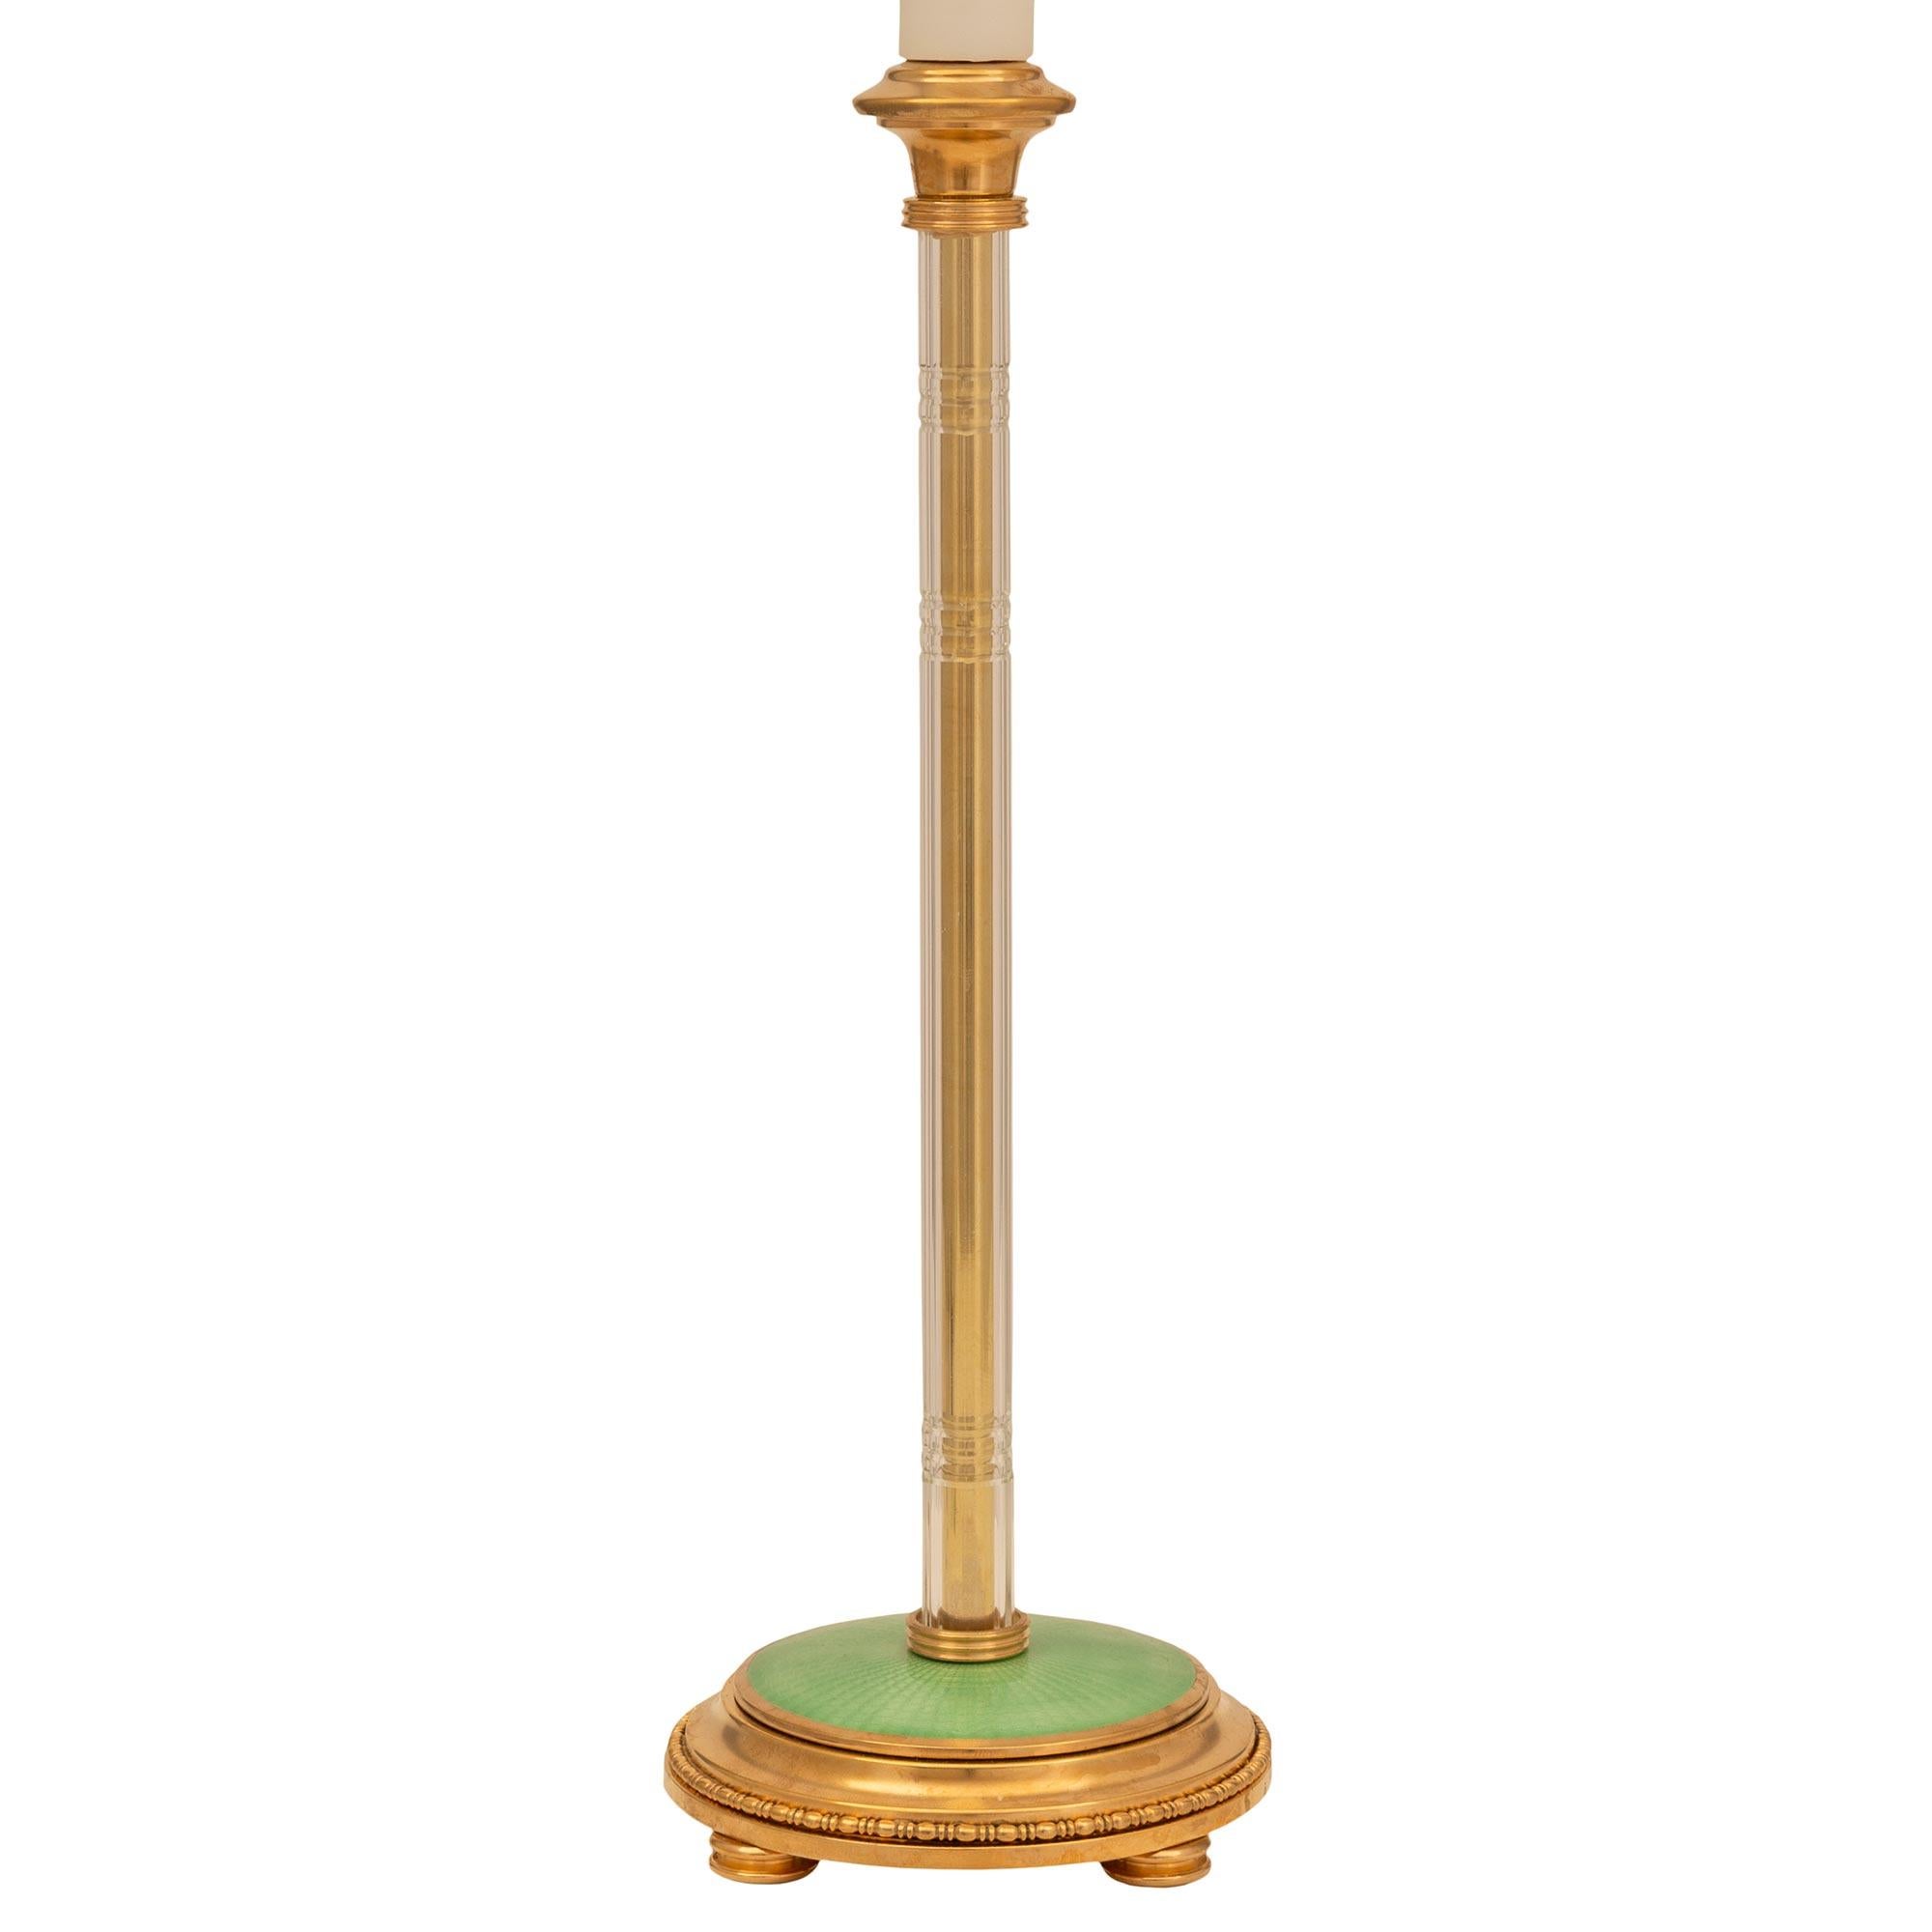 Une paire étonnante de lampes françaises du 19ème siècle, de style Louis XVI, en bronze doré, cristal et émail guilloché. Chaque lampe est surélevée par de fins pieds en forme de chignon tachetés, sous la base circulaire décorée d'une belle bande